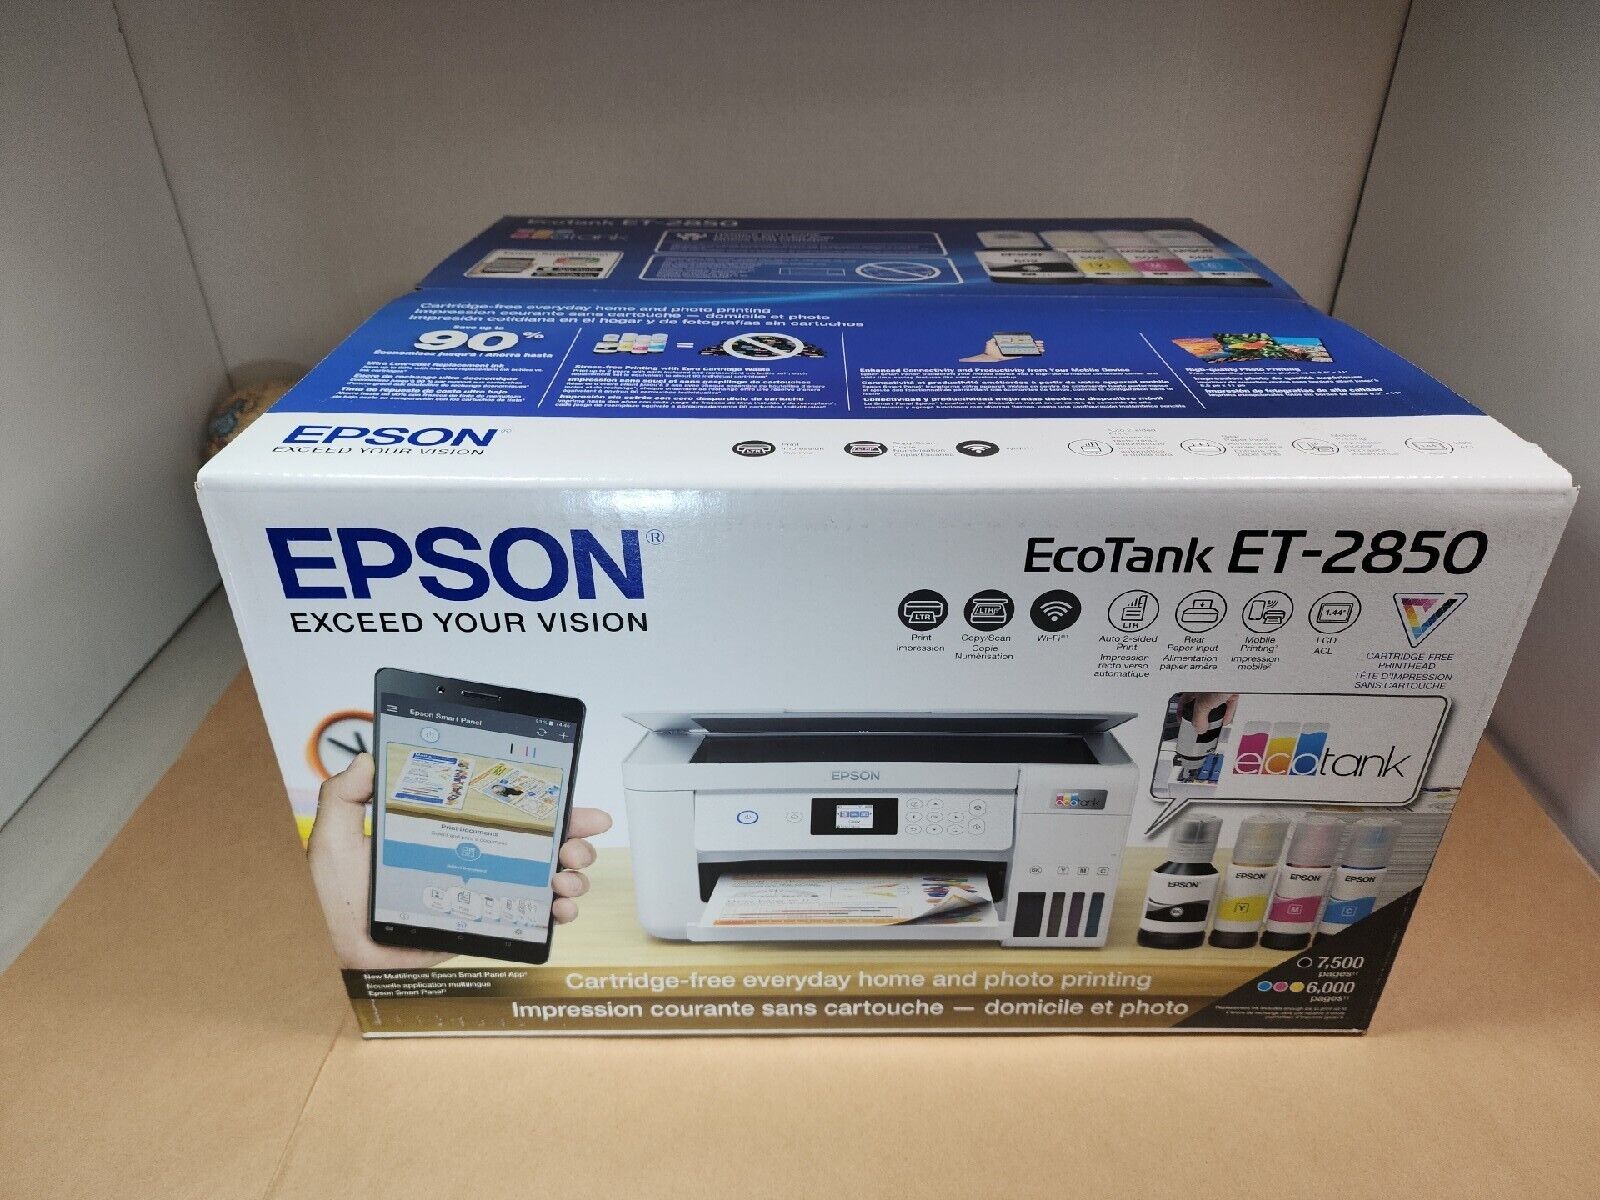 NEW Sealed Epson EcoTank ET-2850 All-in-One Supertank Inkjet Printer White